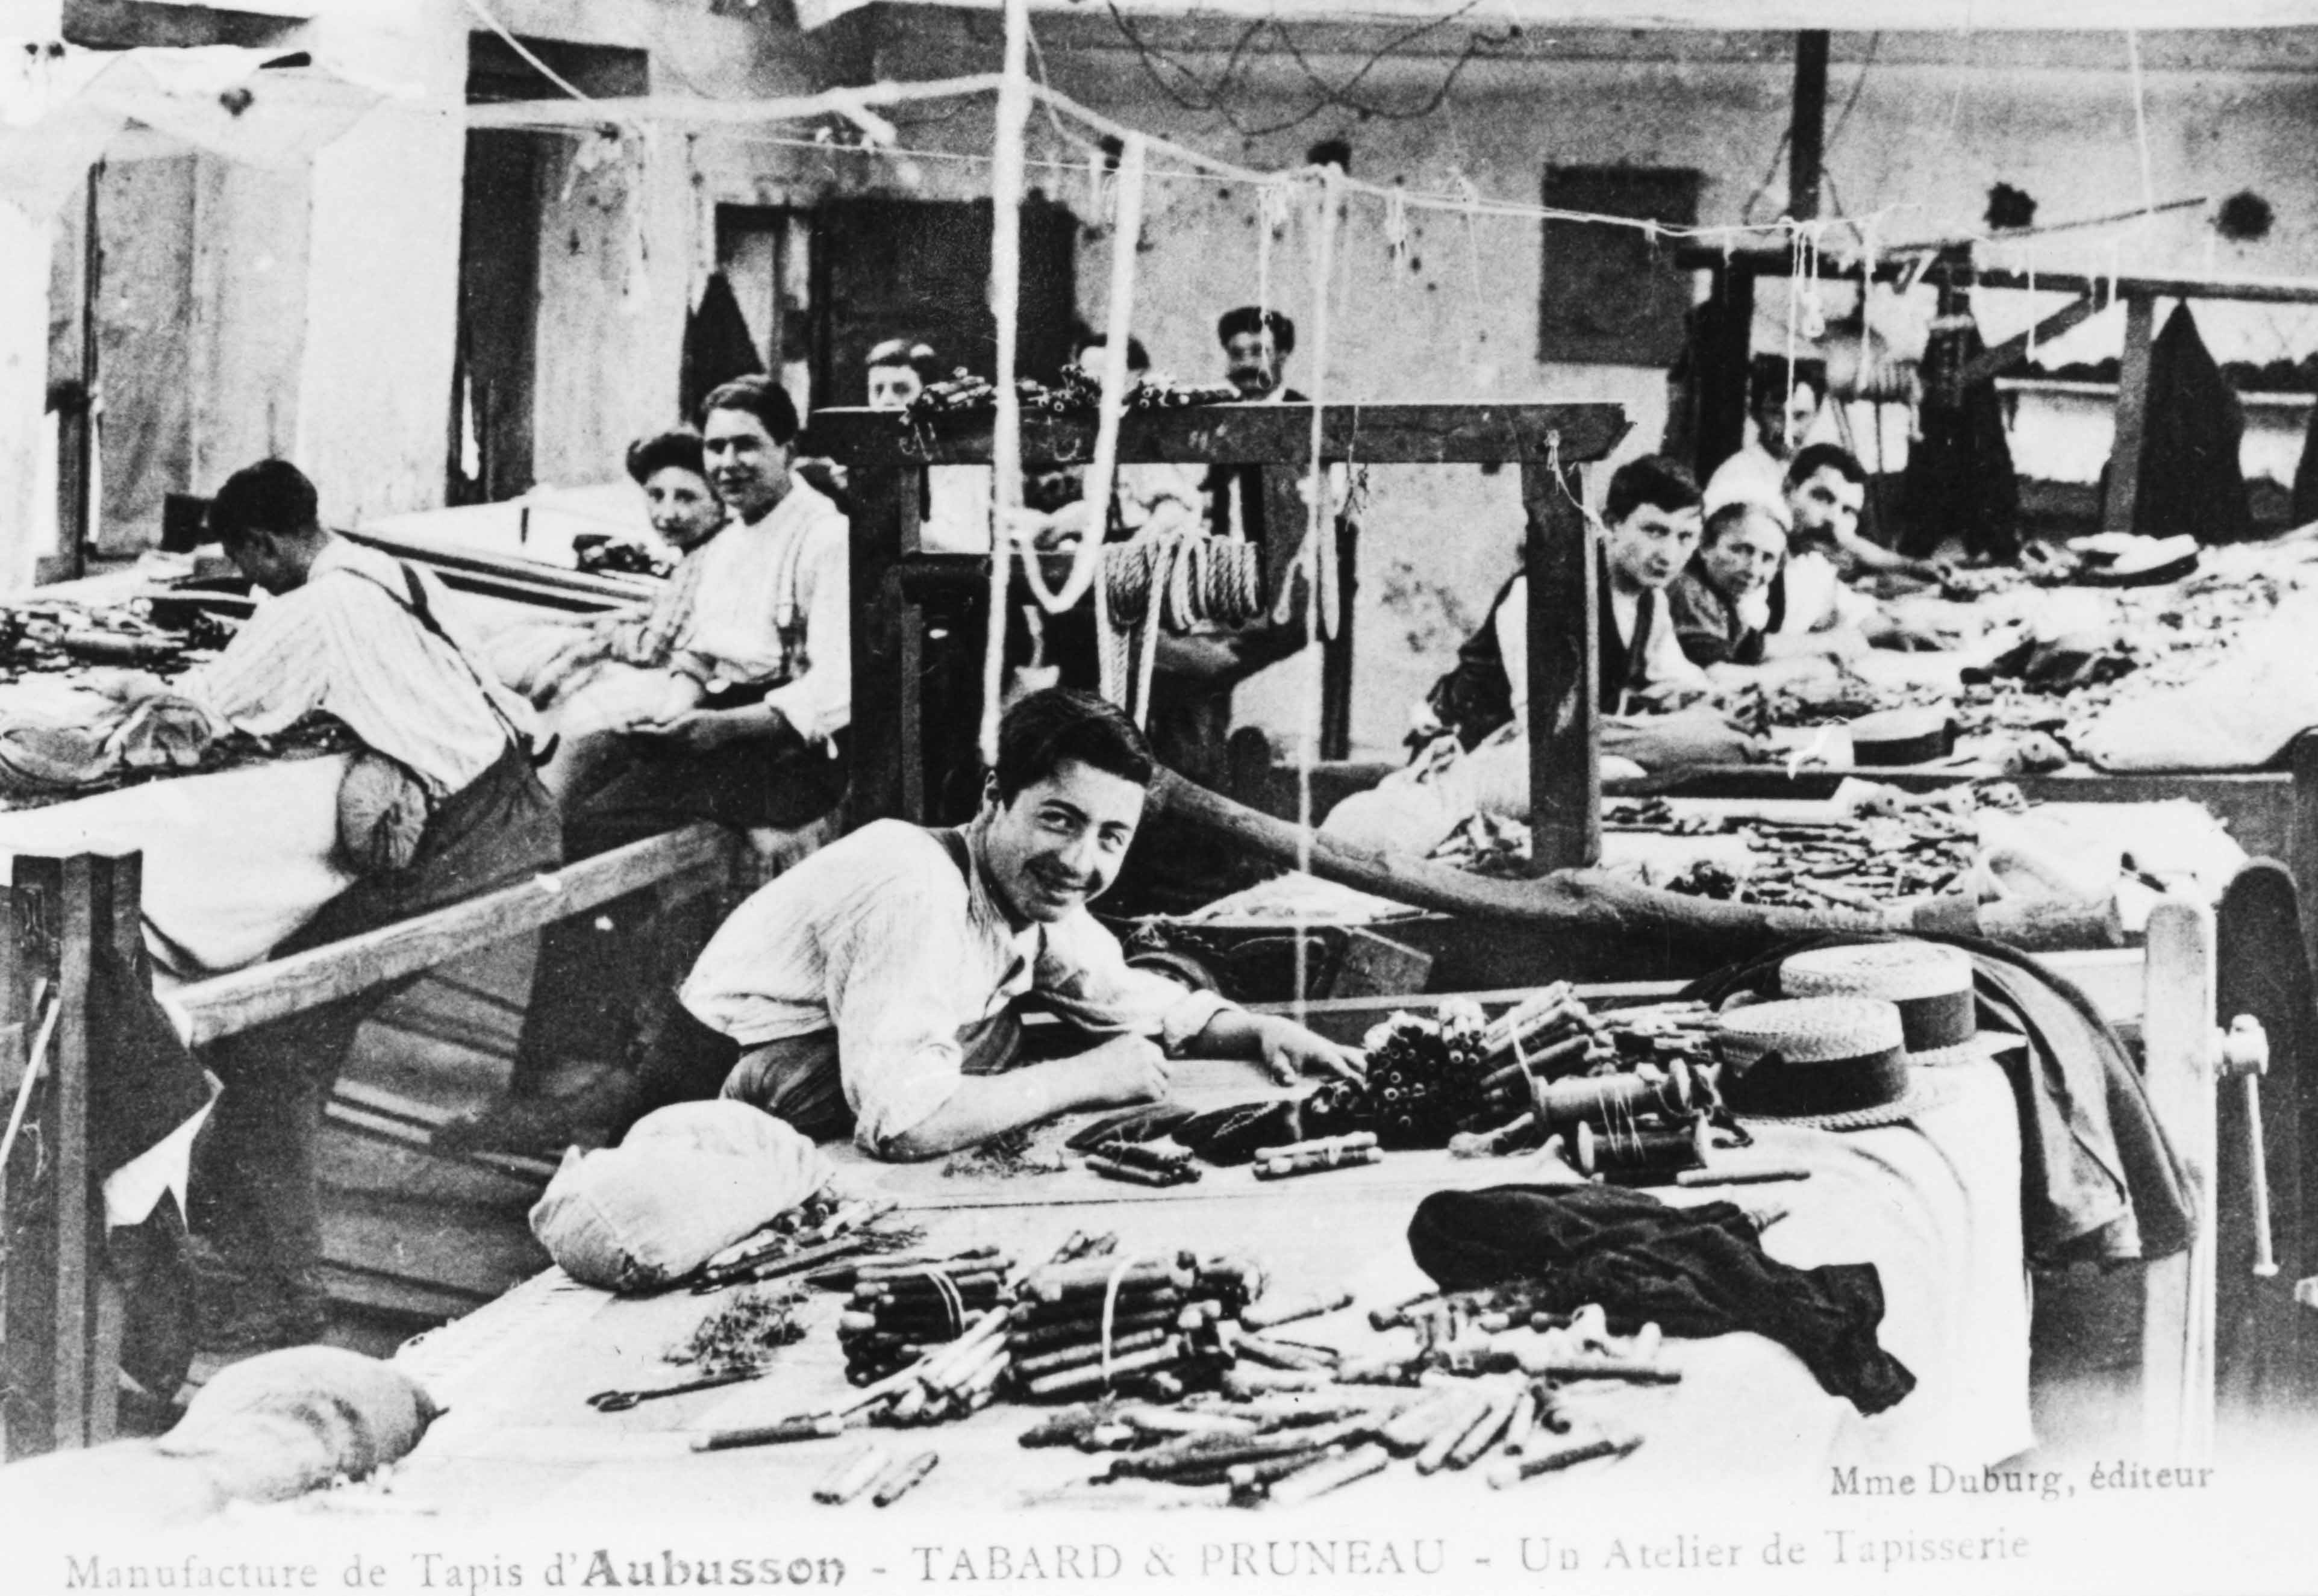 Carte postale (1er quart du 20e siècle) d'un atelier de tapisserie de la manufacture Tabard et Pruneau, avec les ouvriers au travail (Aubusson, centre de documentation du Musée départemental de la Tapisserie)